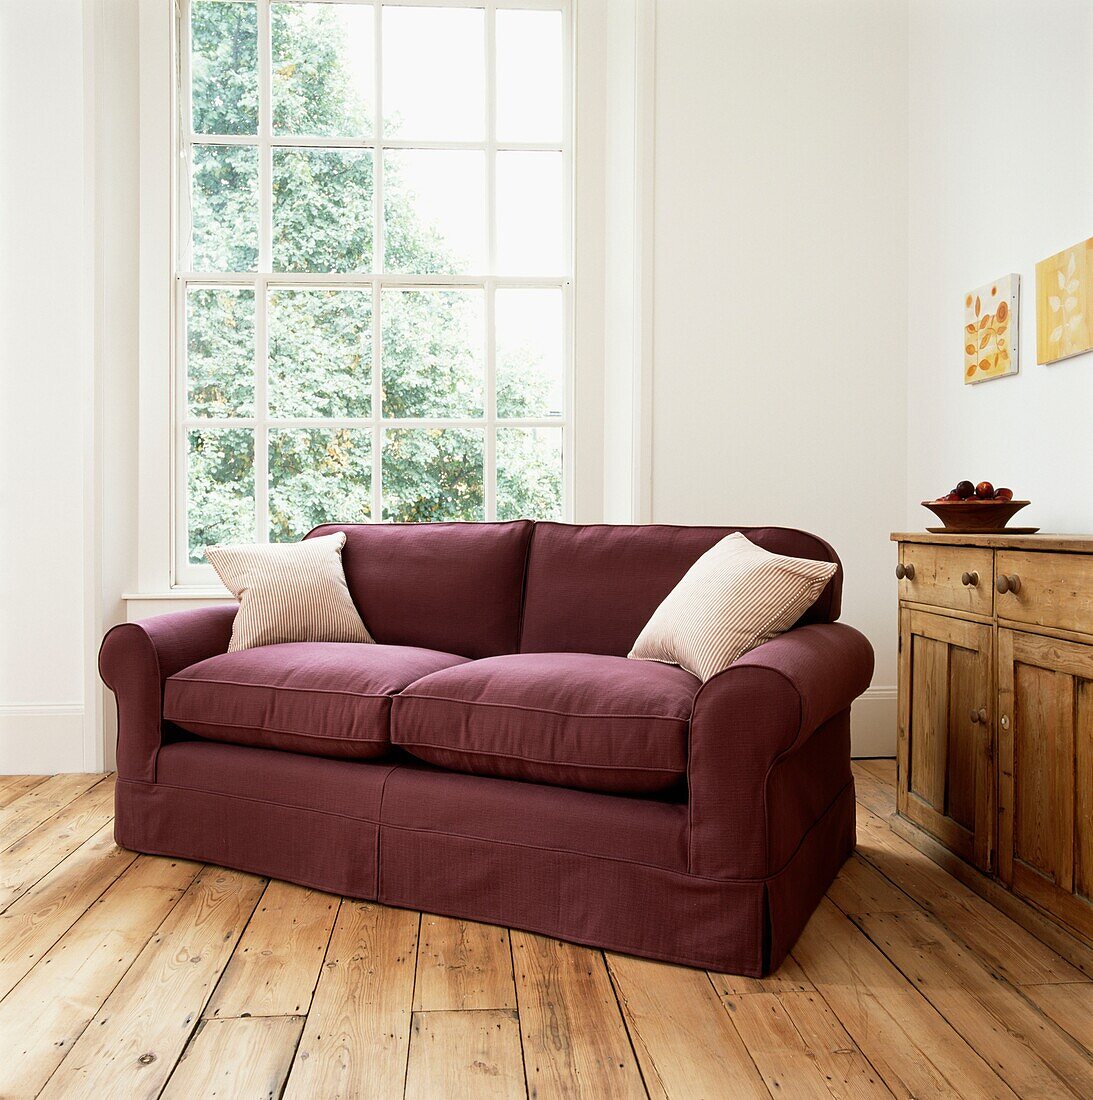 Malvenfarbenes Zweisitzer-Sofa mit Kissen auf Holzdielen an einem Fenster ohne Vorhang